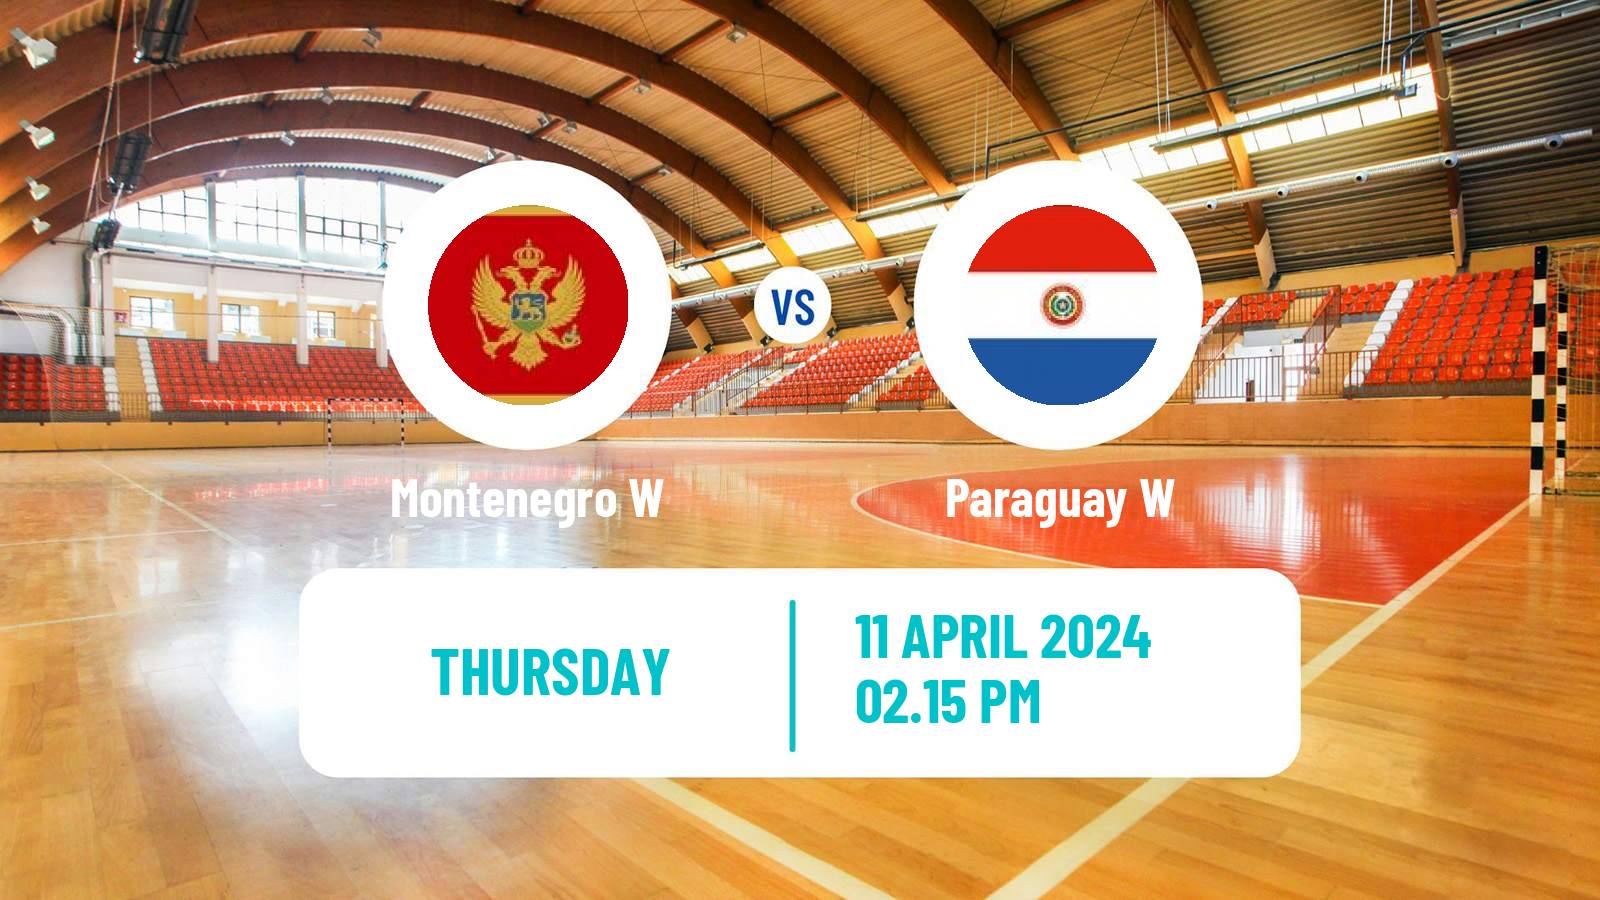 Handball Olympic Games - Handball Women Montenegro W - Paraguay W